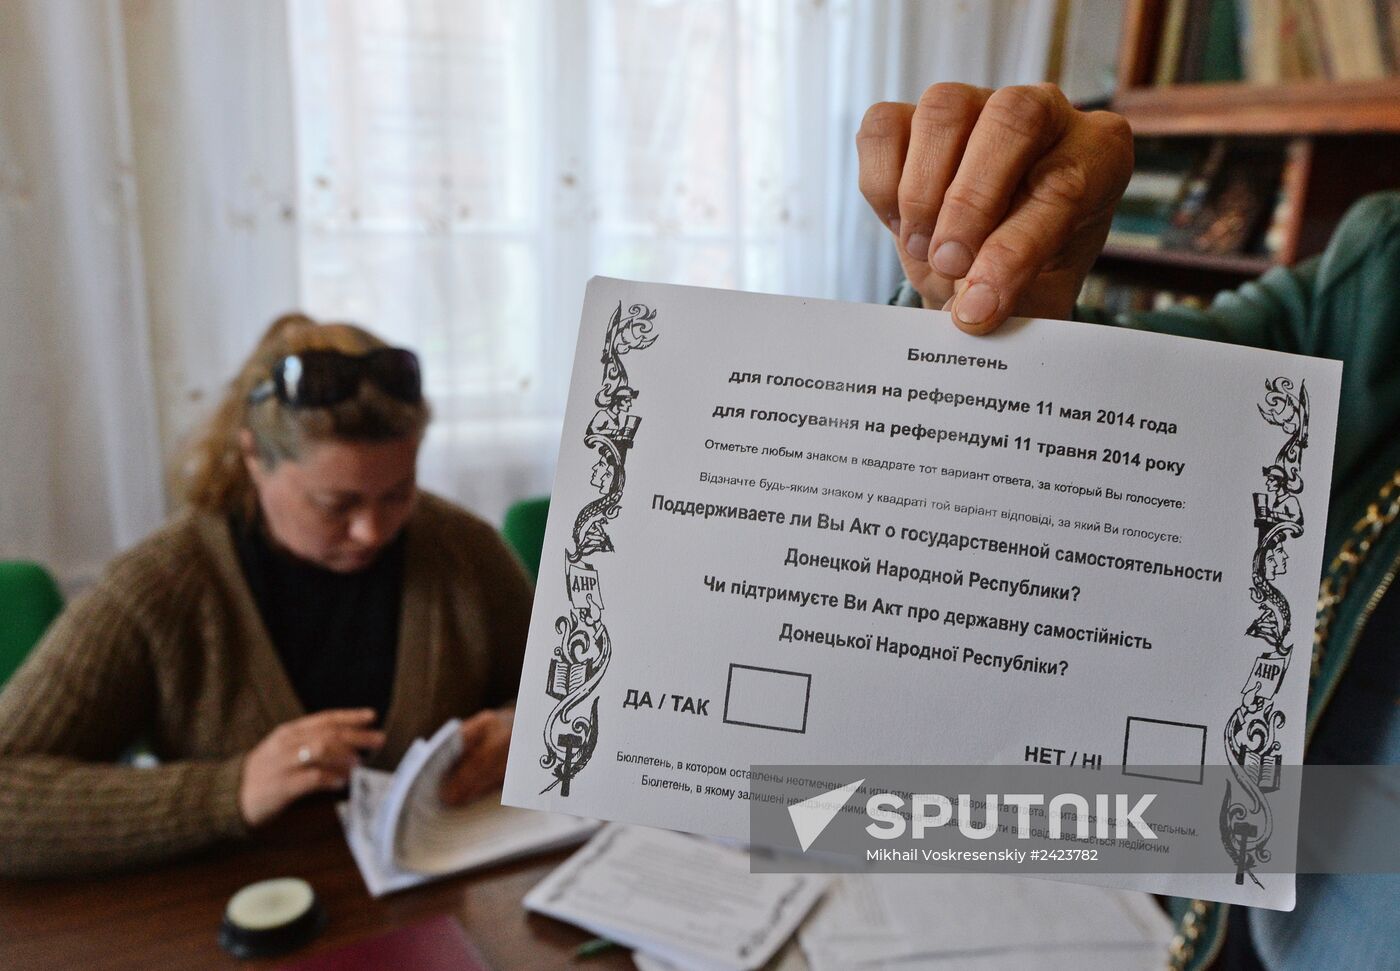 Slavyansk prepares for referendum on May 11